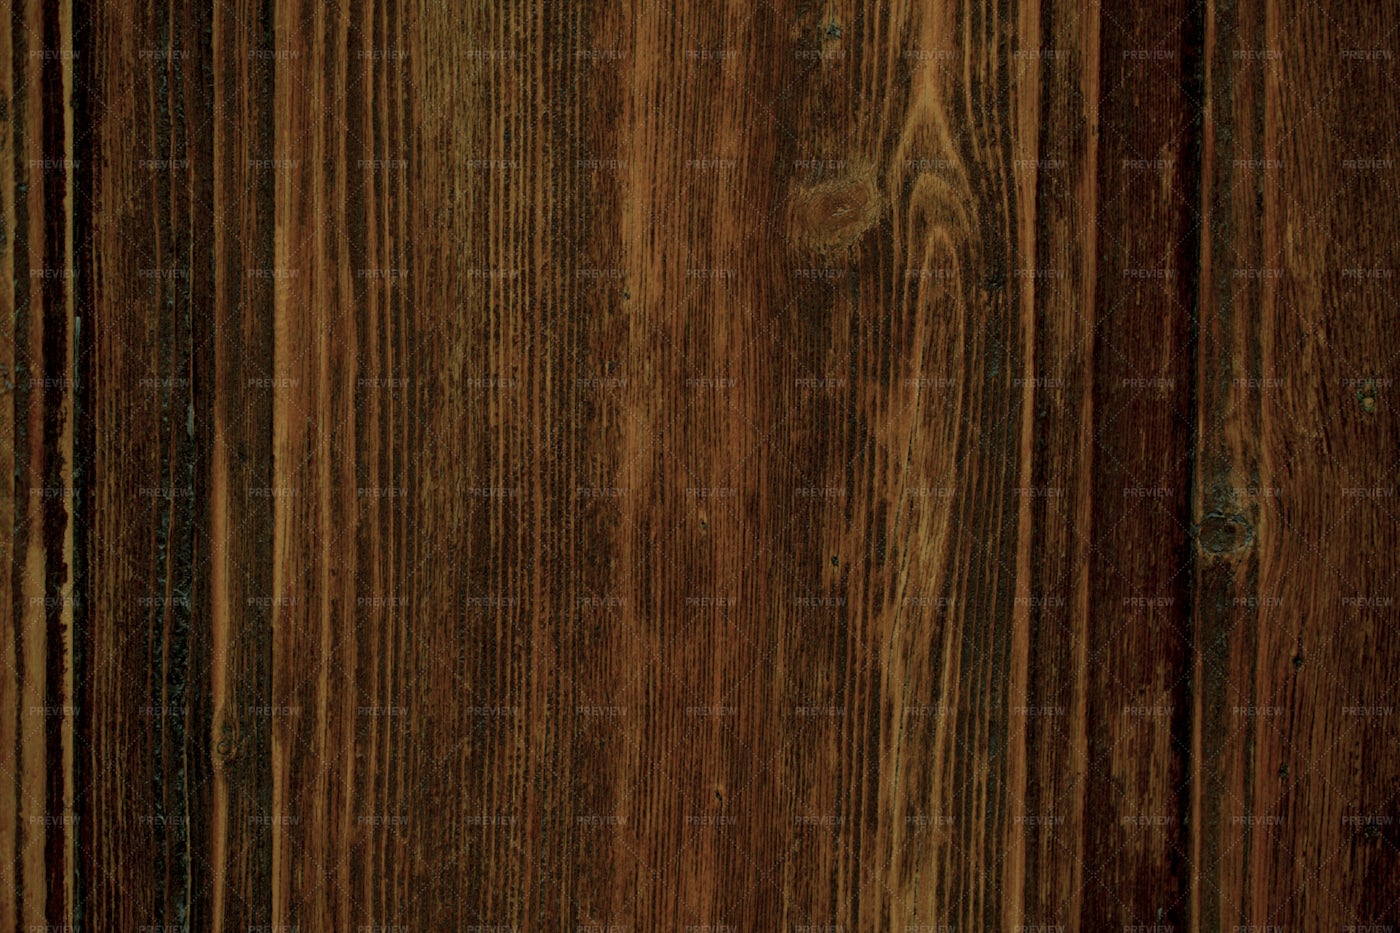 Texture Of Wood: Stock Photos